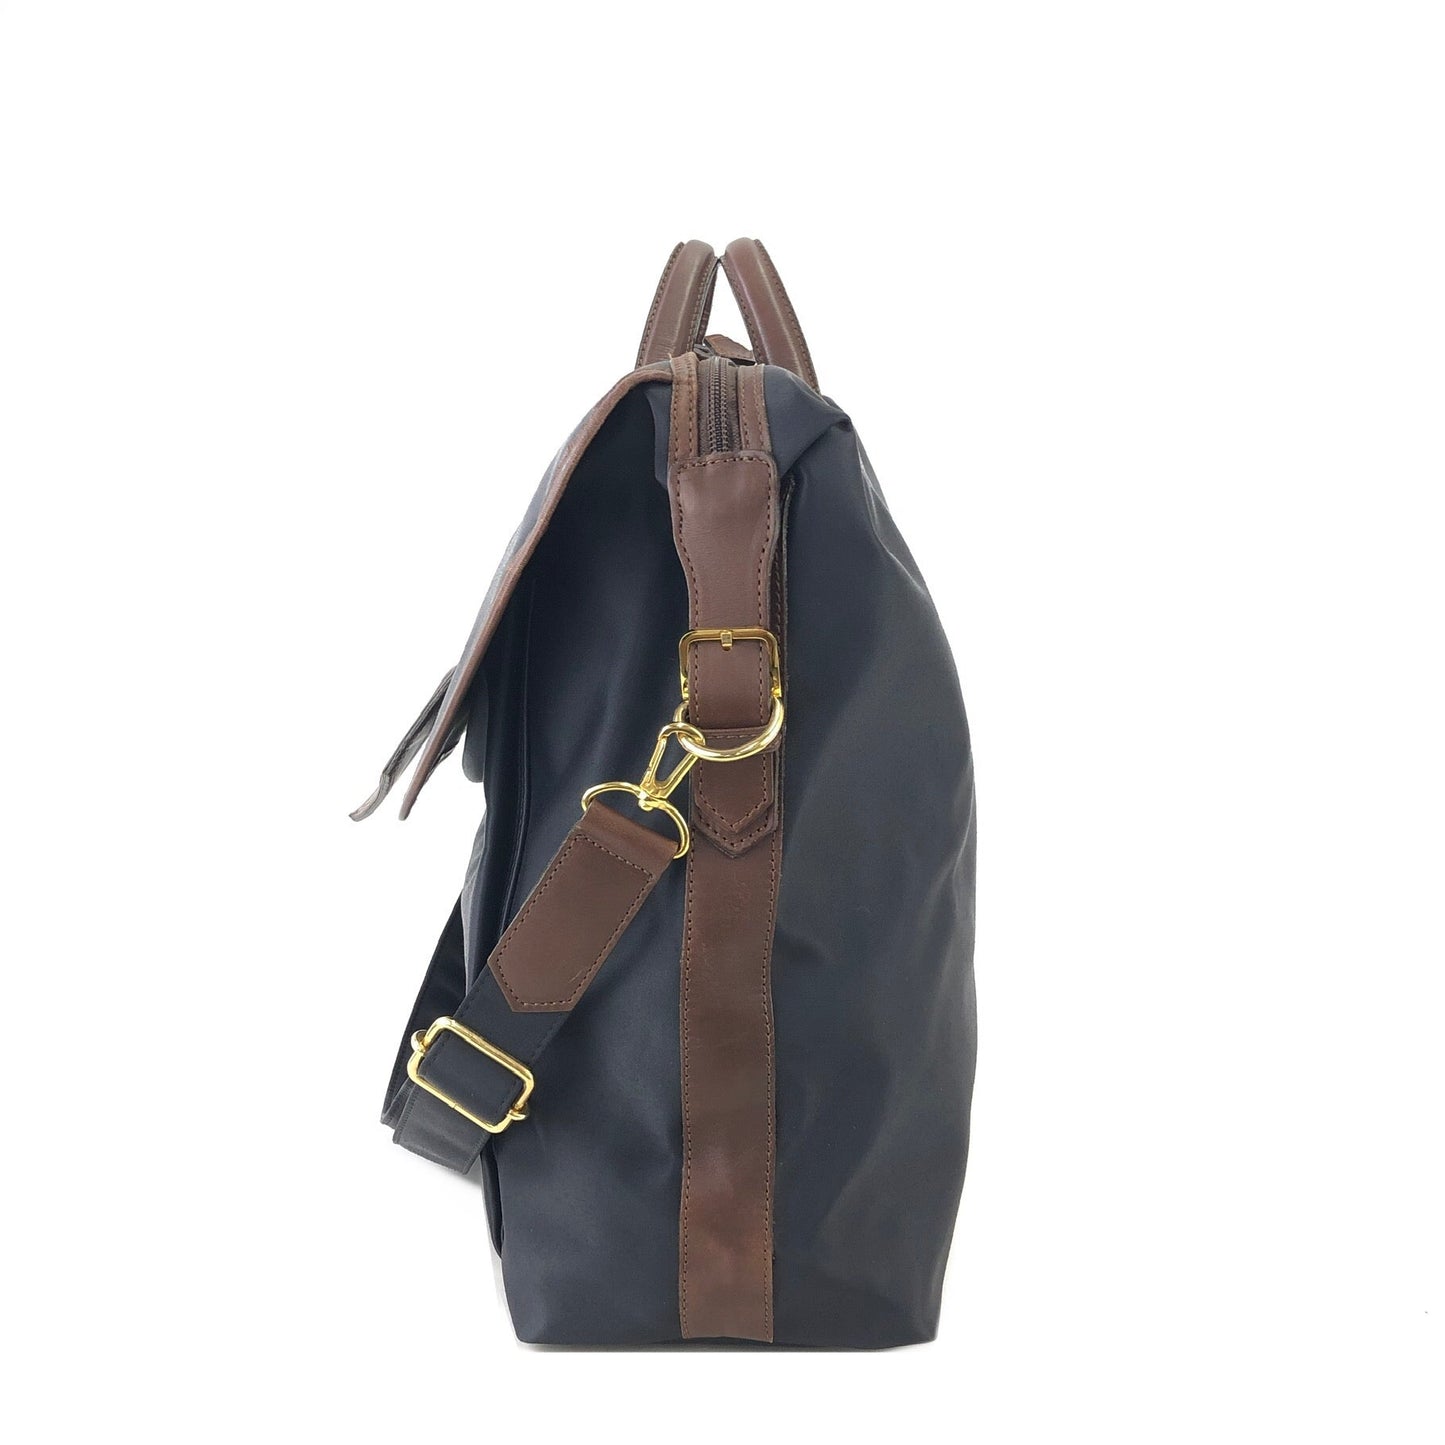 Yves Saint Laurent yEmbossed  Nylon x leather 2way bostonba shoulder bag navy x brown vintage old yf3gf4